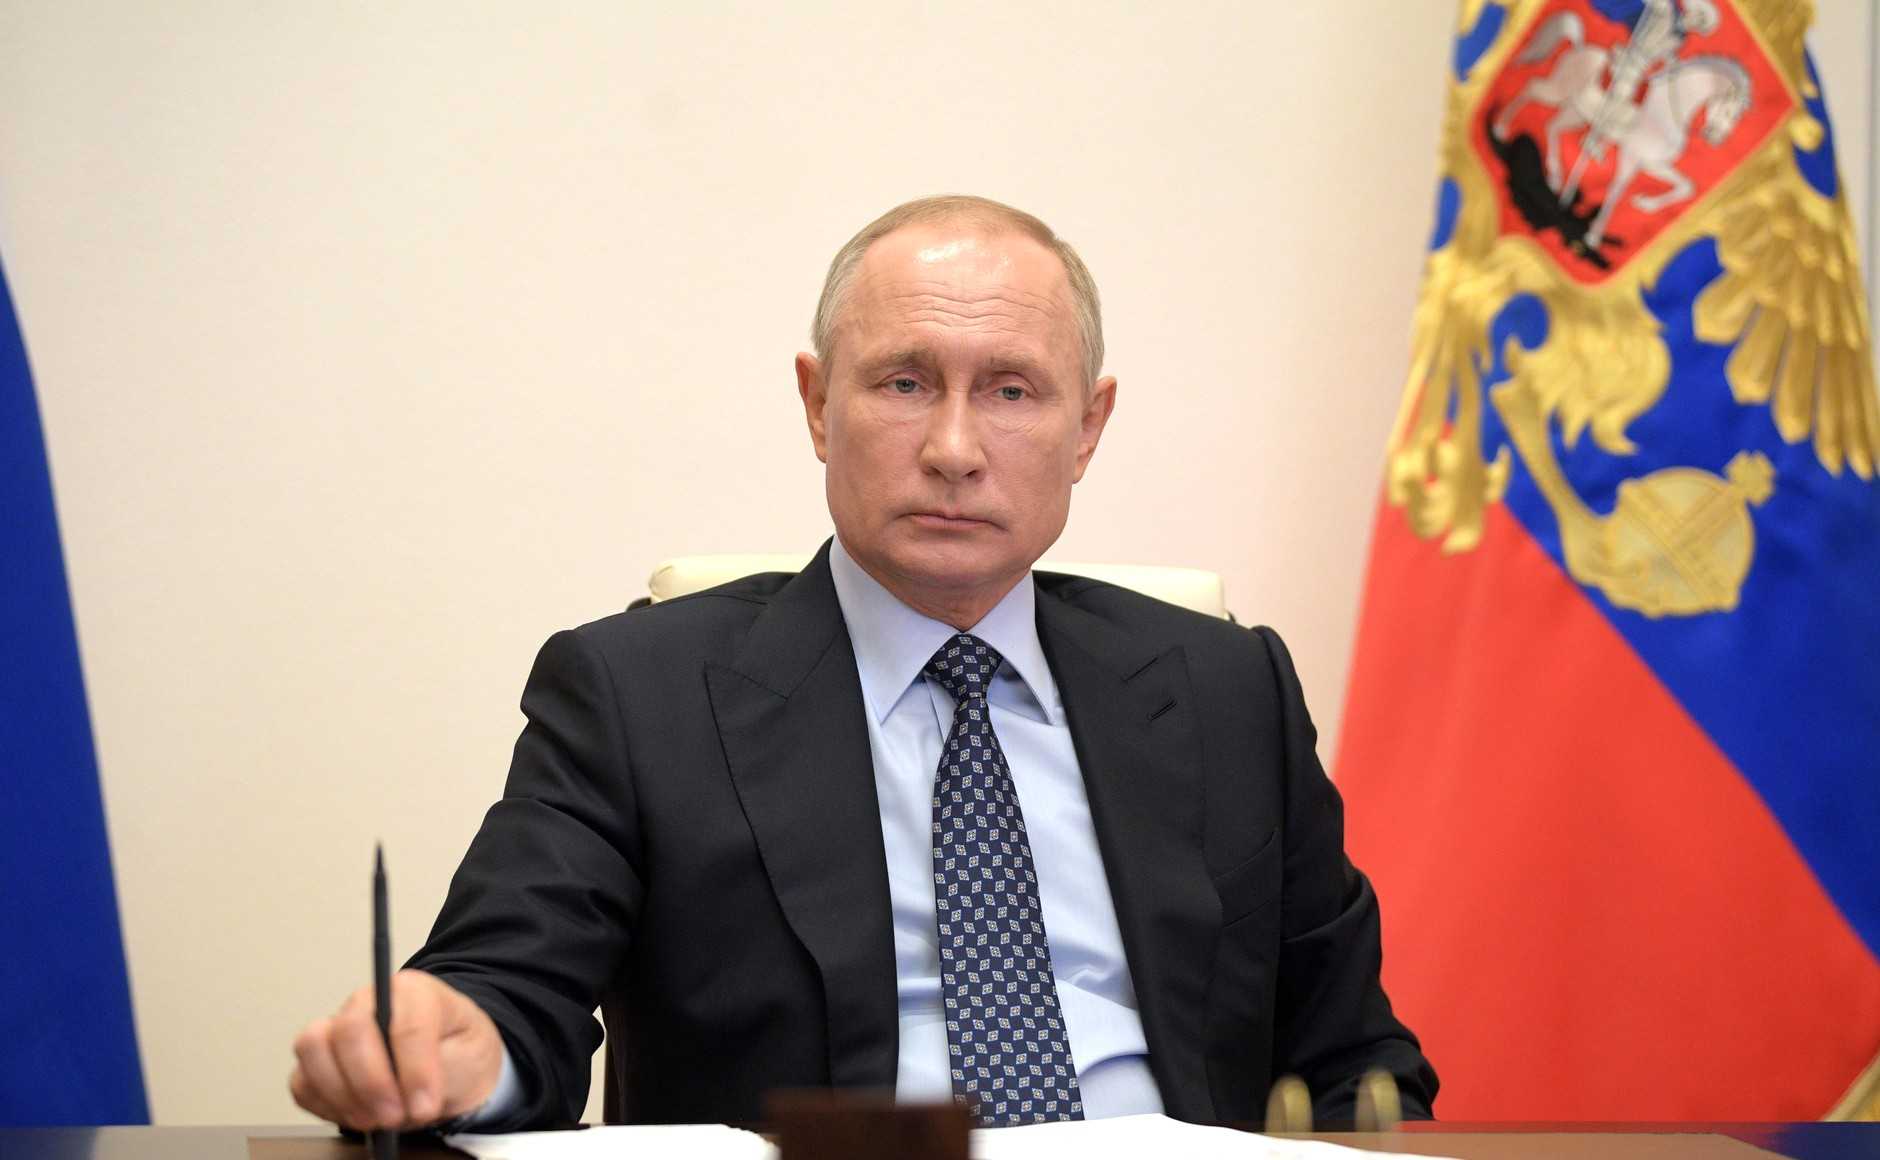 Опрос показал падение рейтинга Путина до исторического минимума